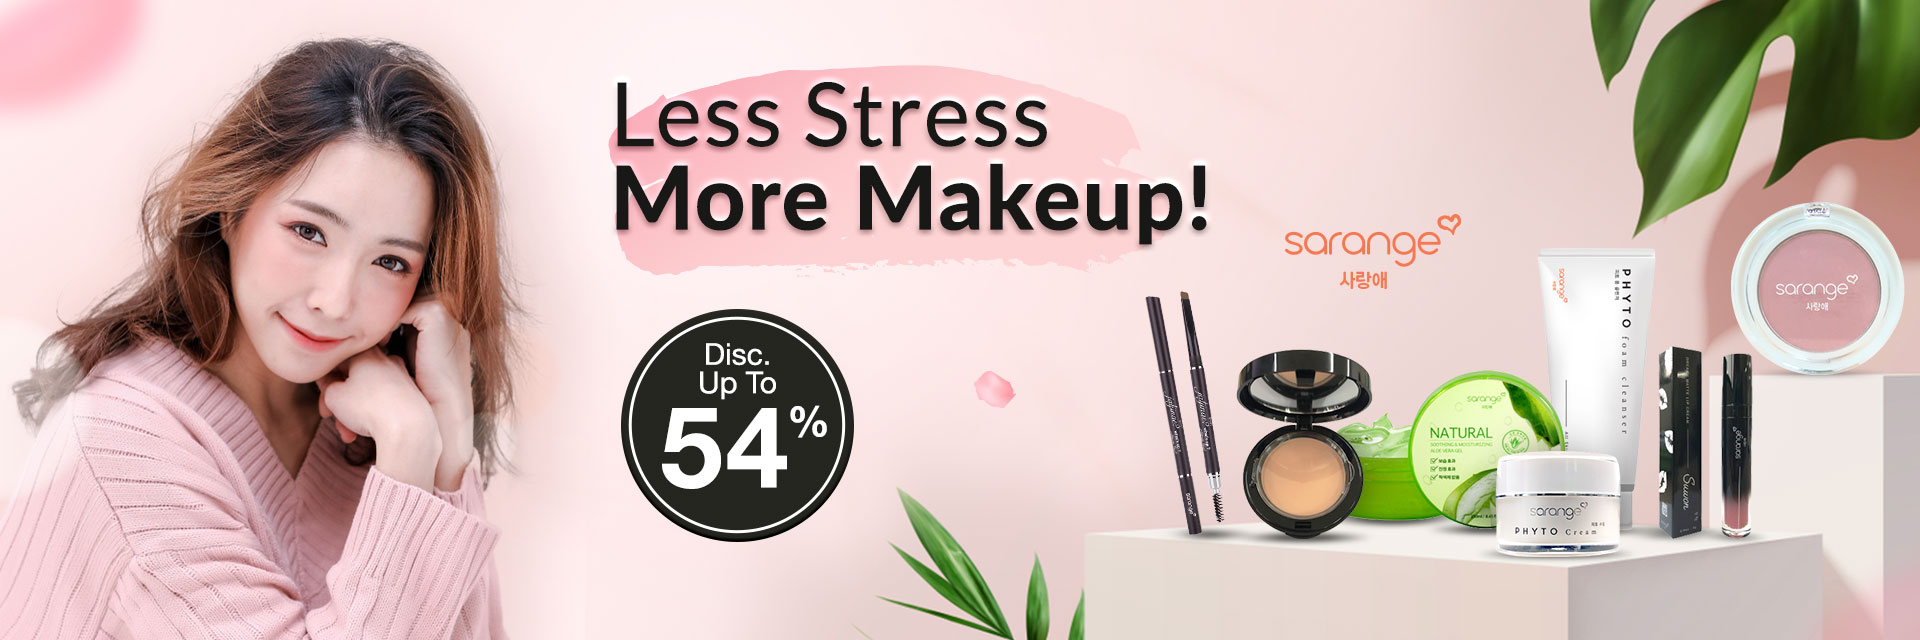 Less Stress More Makeup